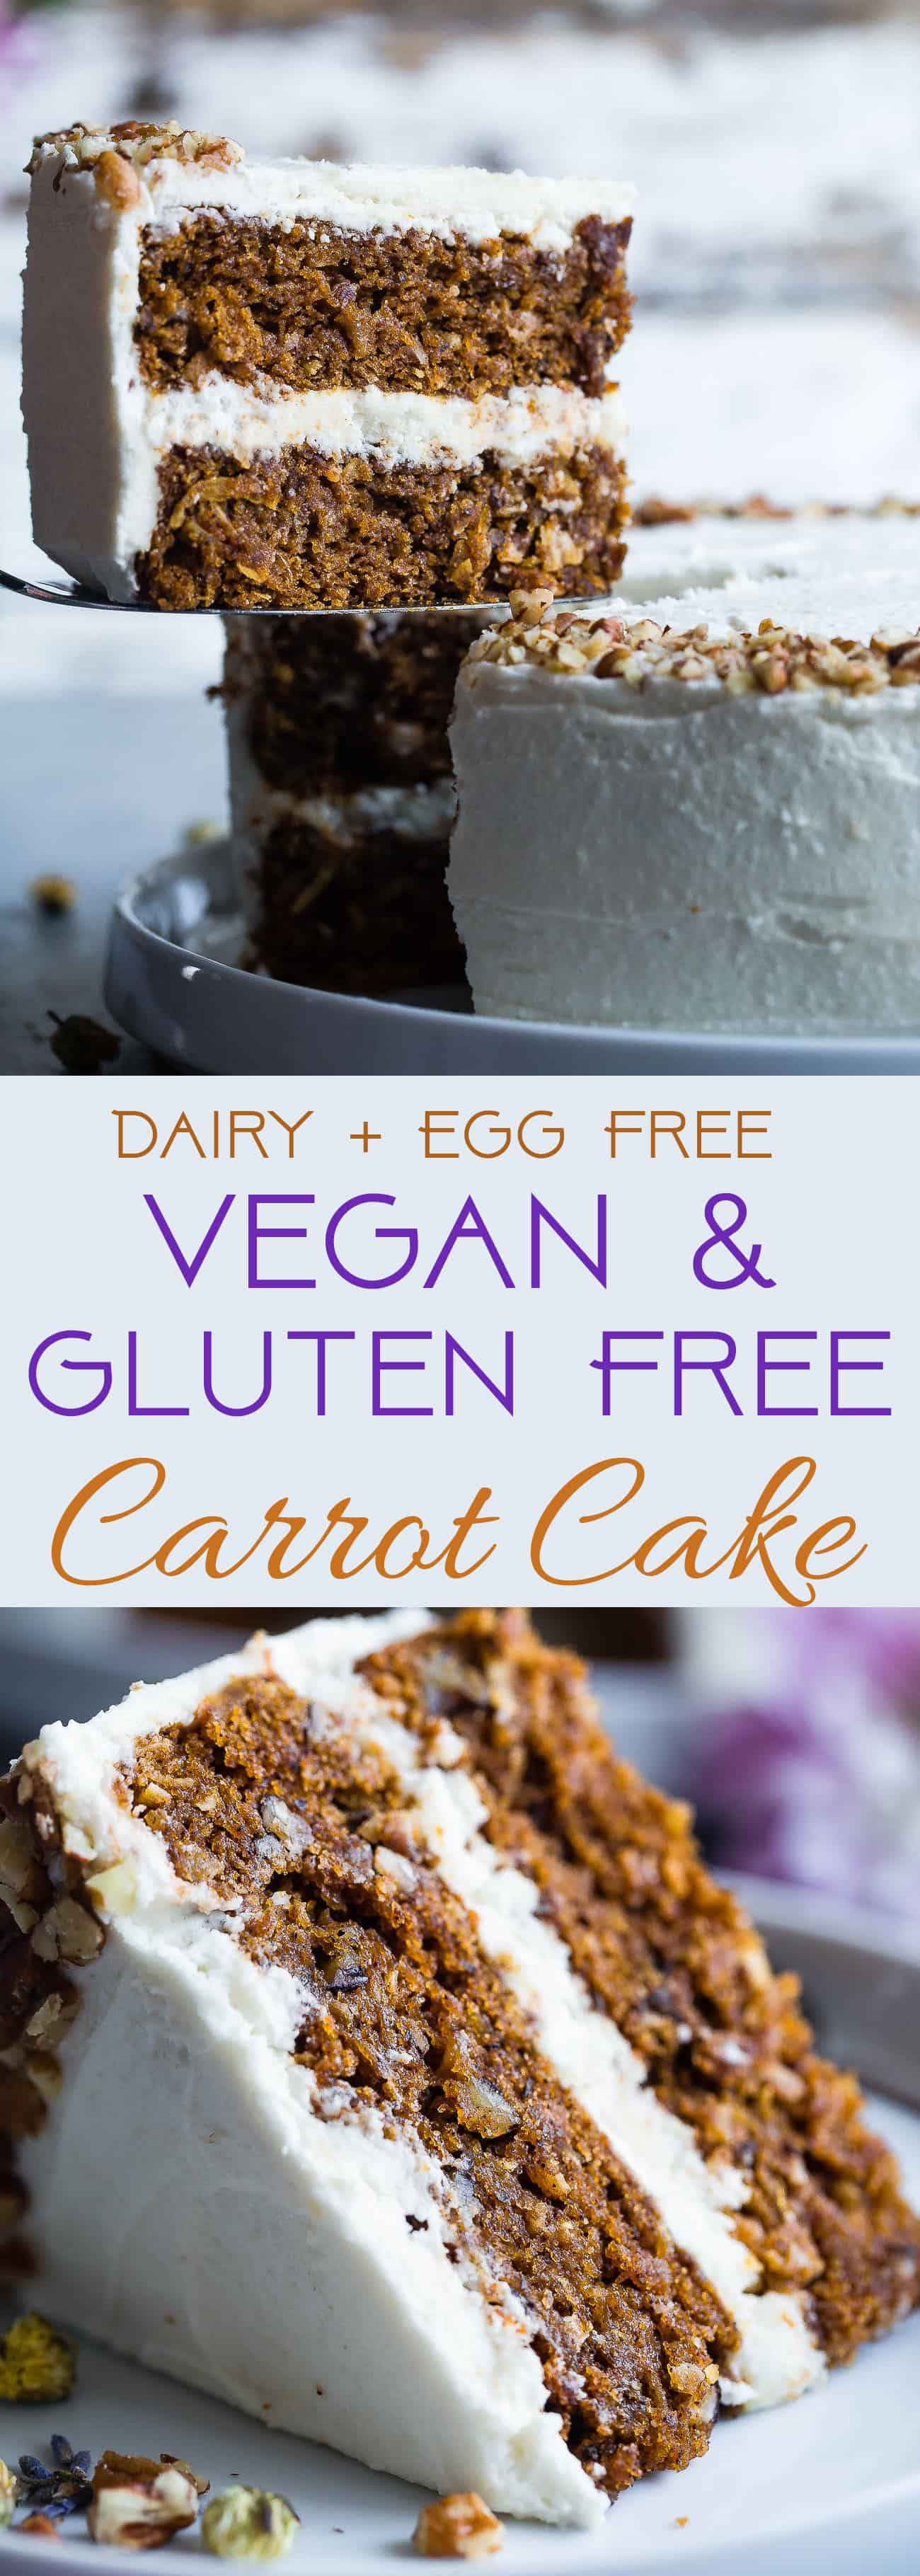 Dairy Free Carrot Cake Vegan Gluten Free Dairy Free Carrot Cake